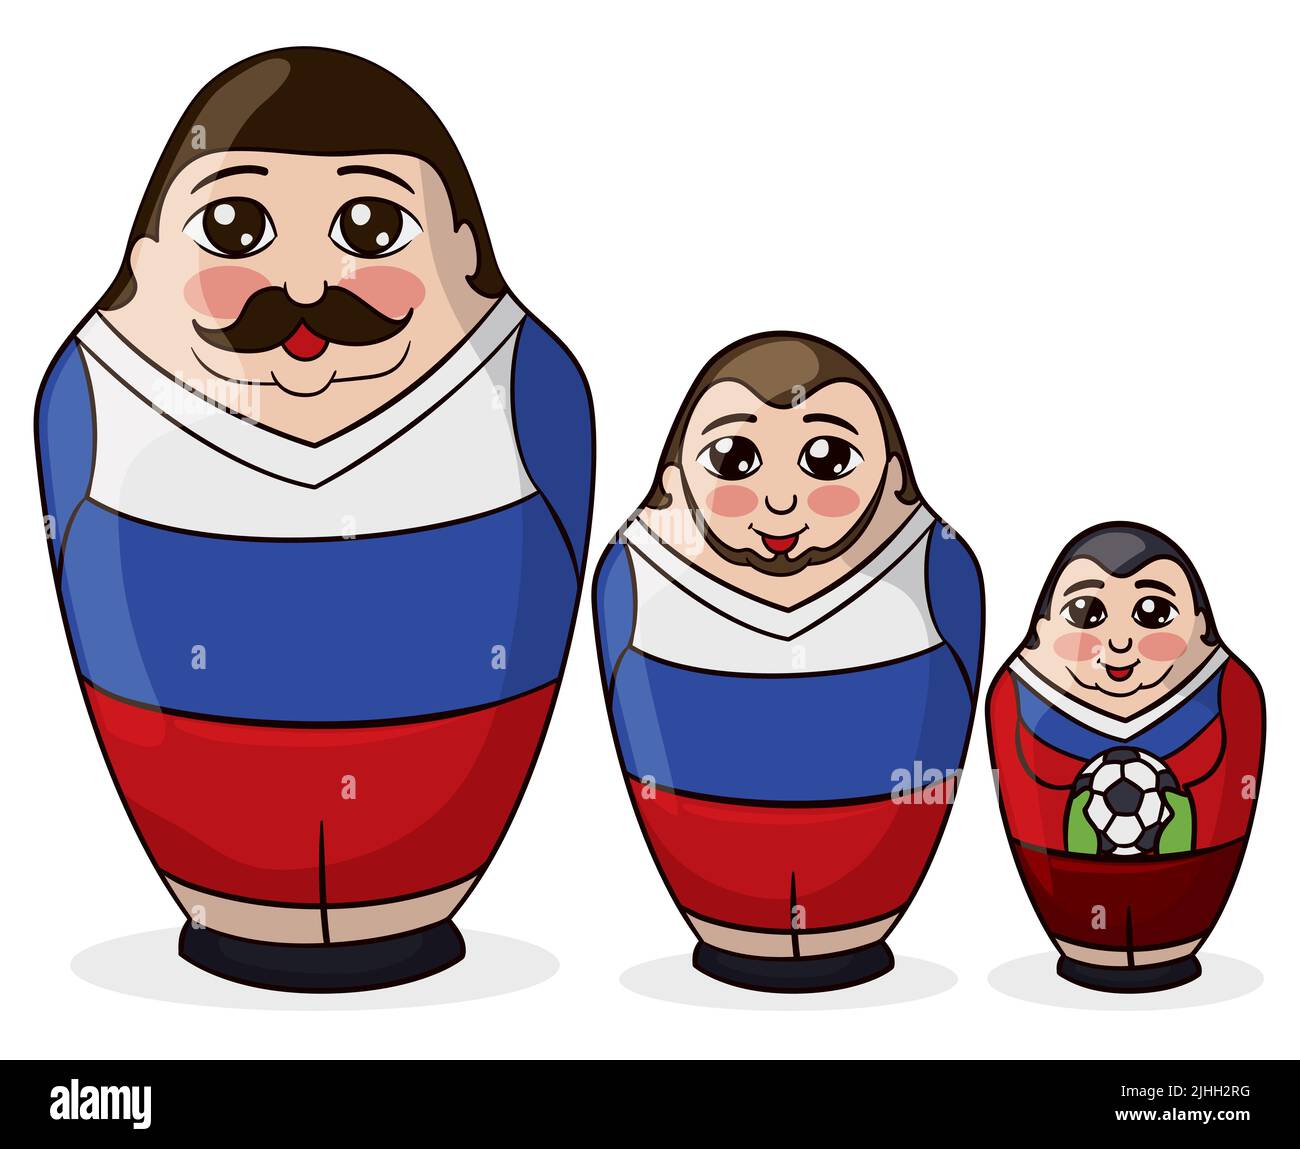 Conjunto de muñecas Matryoshka, como equipo de fútbol: El diminuto portero con balón de fútbol, el centrocampista con barba y el capitán con bigote. Diseño en coche Ilustración del Vector